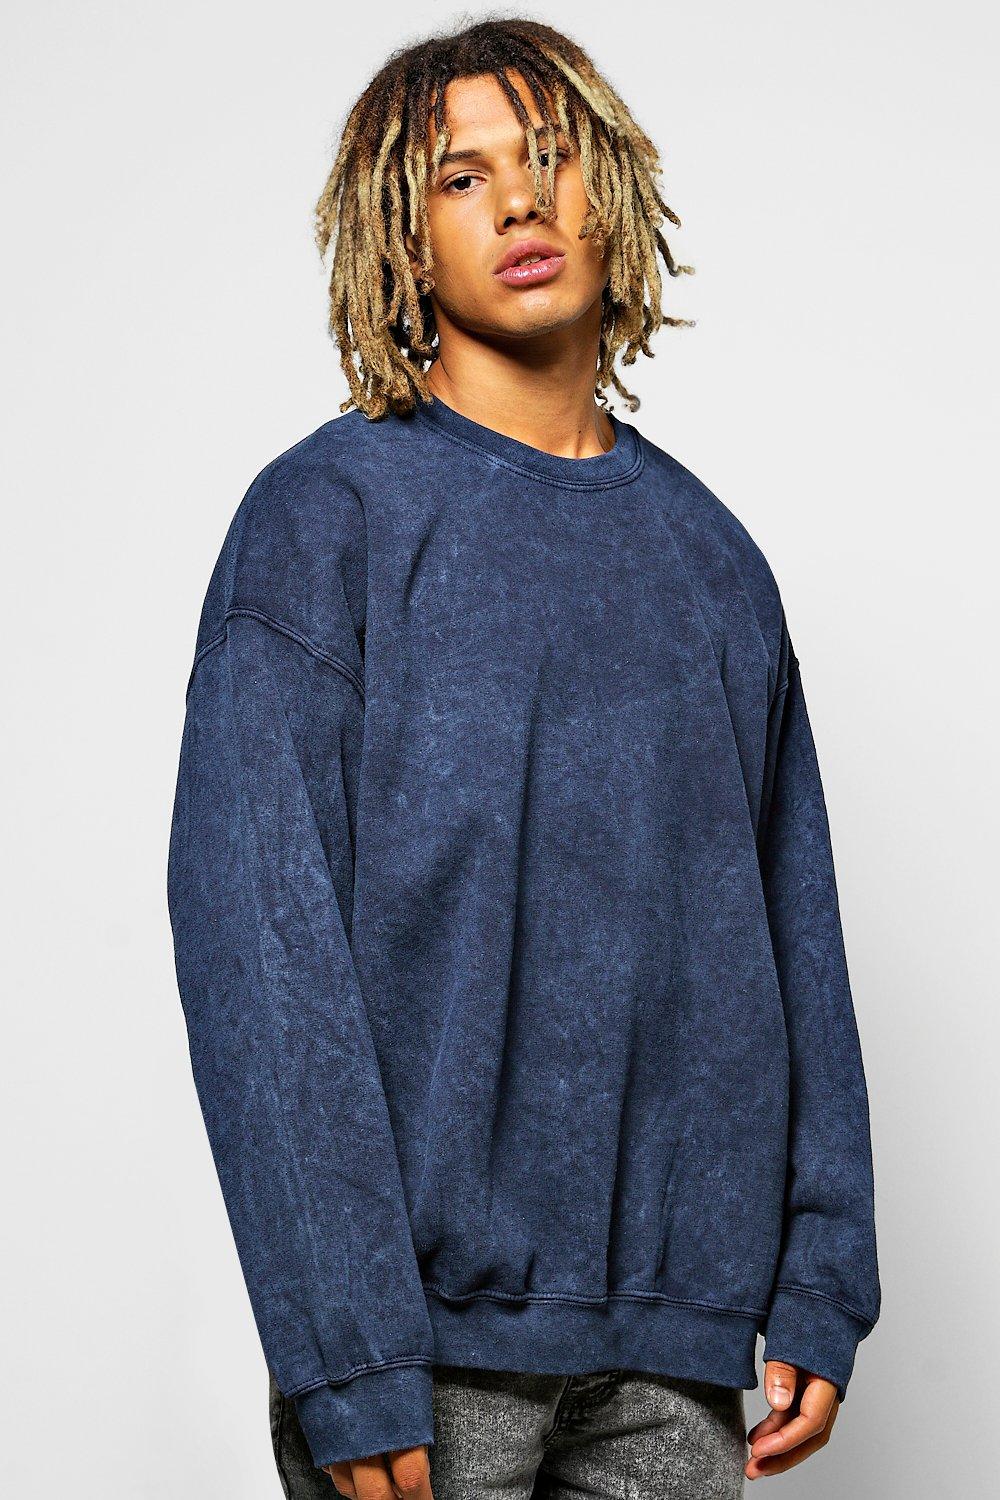 Boohoo Mens Oversized Acid Wash Sweatshirt | eBay